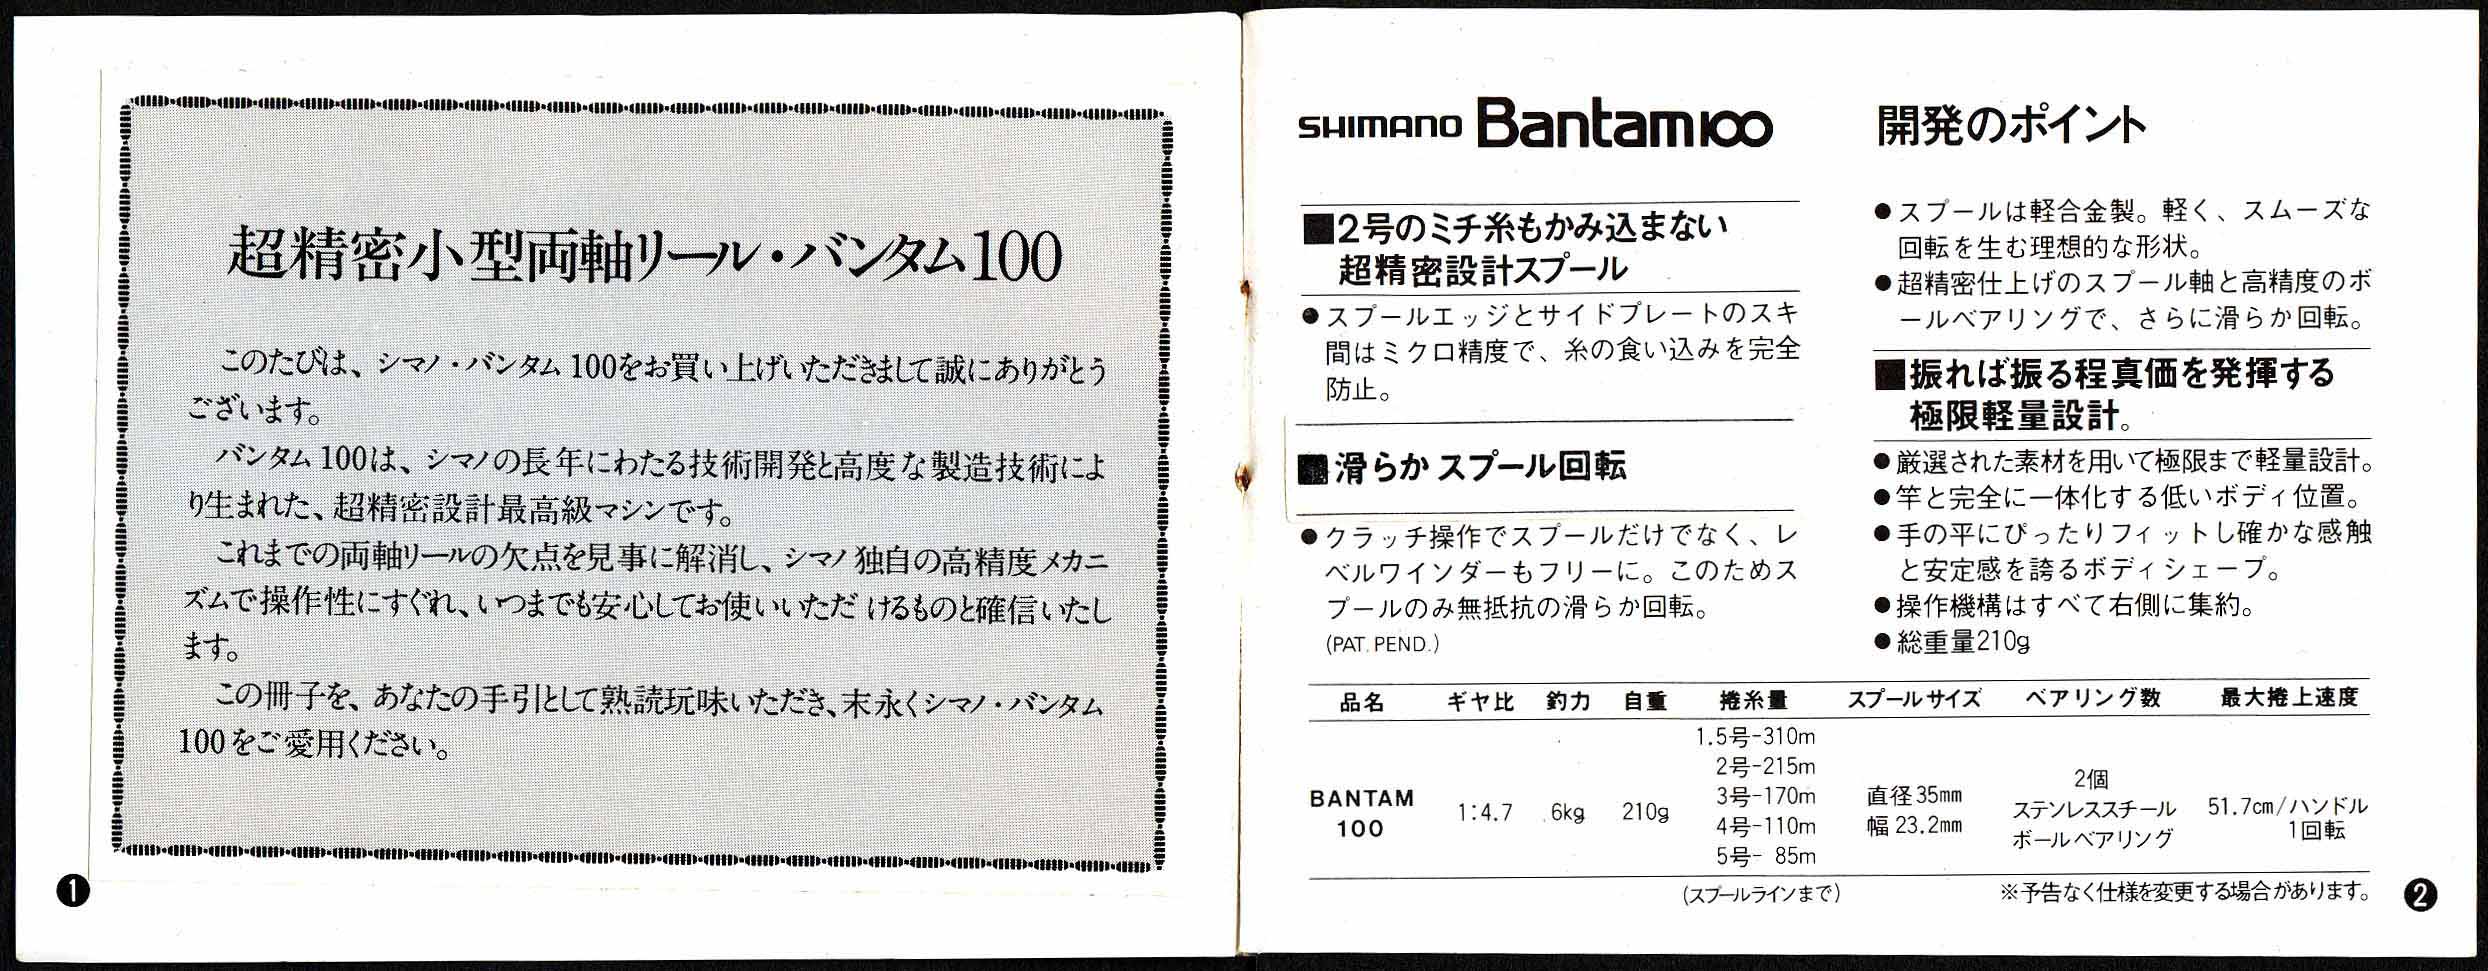 シマノ バンタム100取扱説明書 | hiroyaikedaの物欲の館2